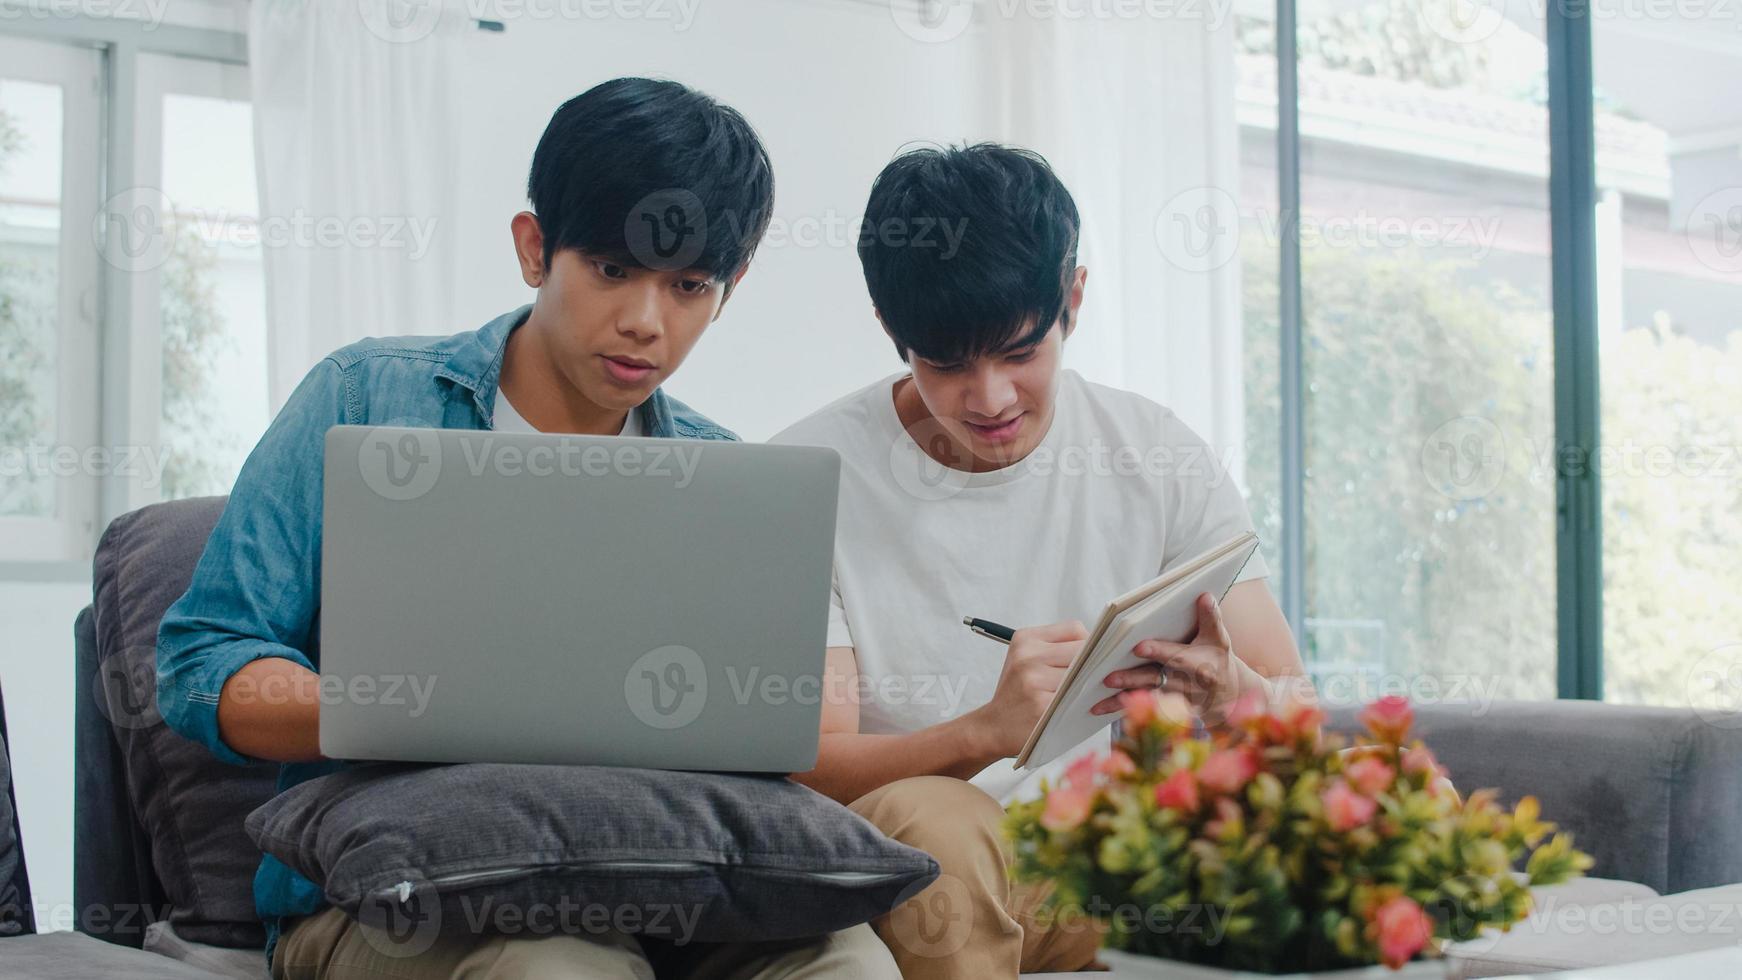 unga asiatiska gay par arbetar laptop i moderna hem. asien lgbtq män glada slappna av kul att använda dator och analysera sin ekonomi på internet tillsammans medan de ligger soffan i vardagsrummet hemma koncept. foto